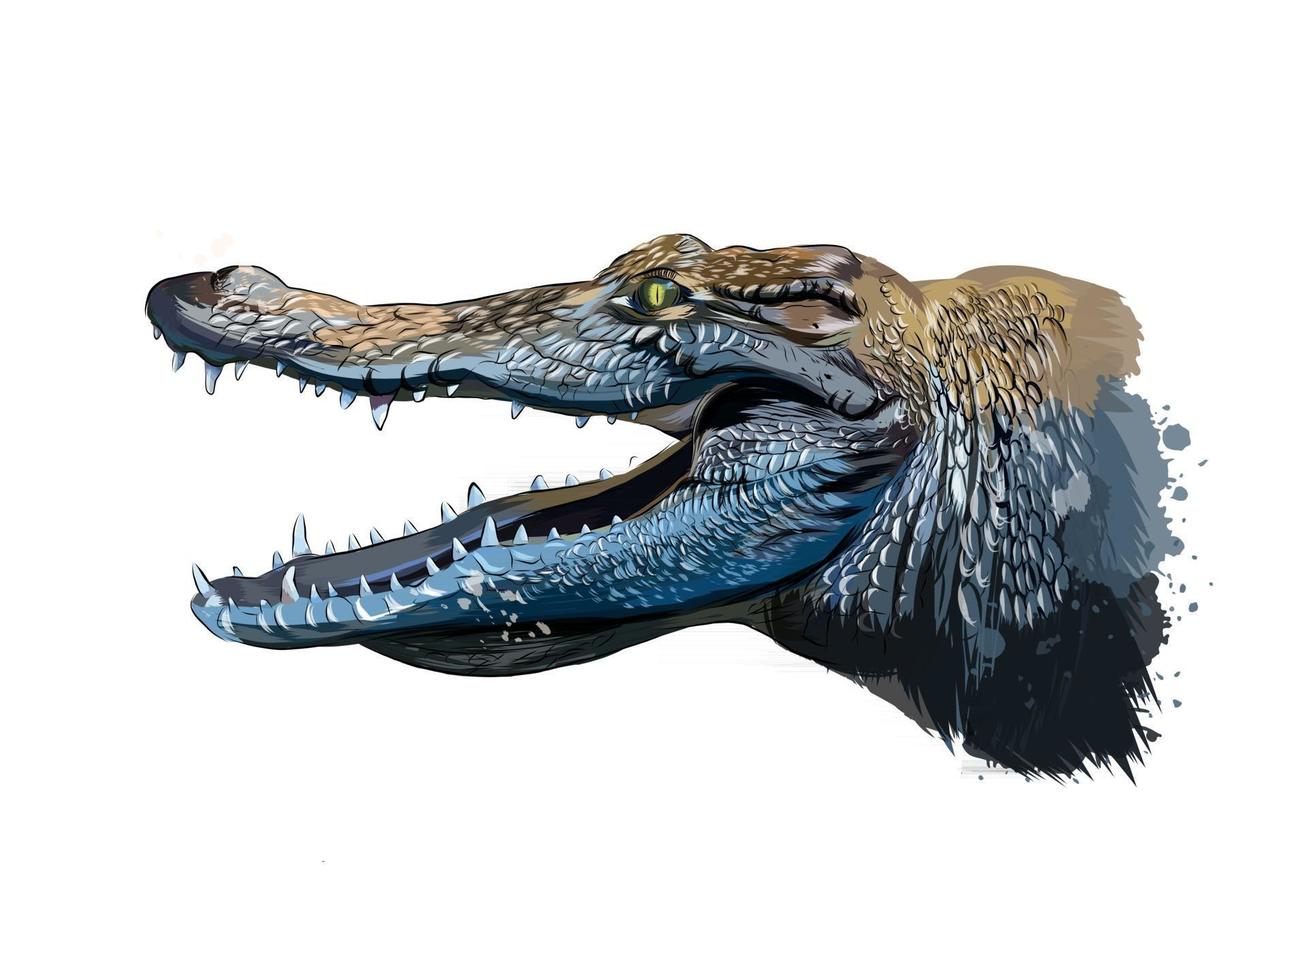 Krokodilkopfporträt aus einem Spritzer Aquarell, farbige Zeichnung, realistisch. Vektor-Illustration von Farben vektor